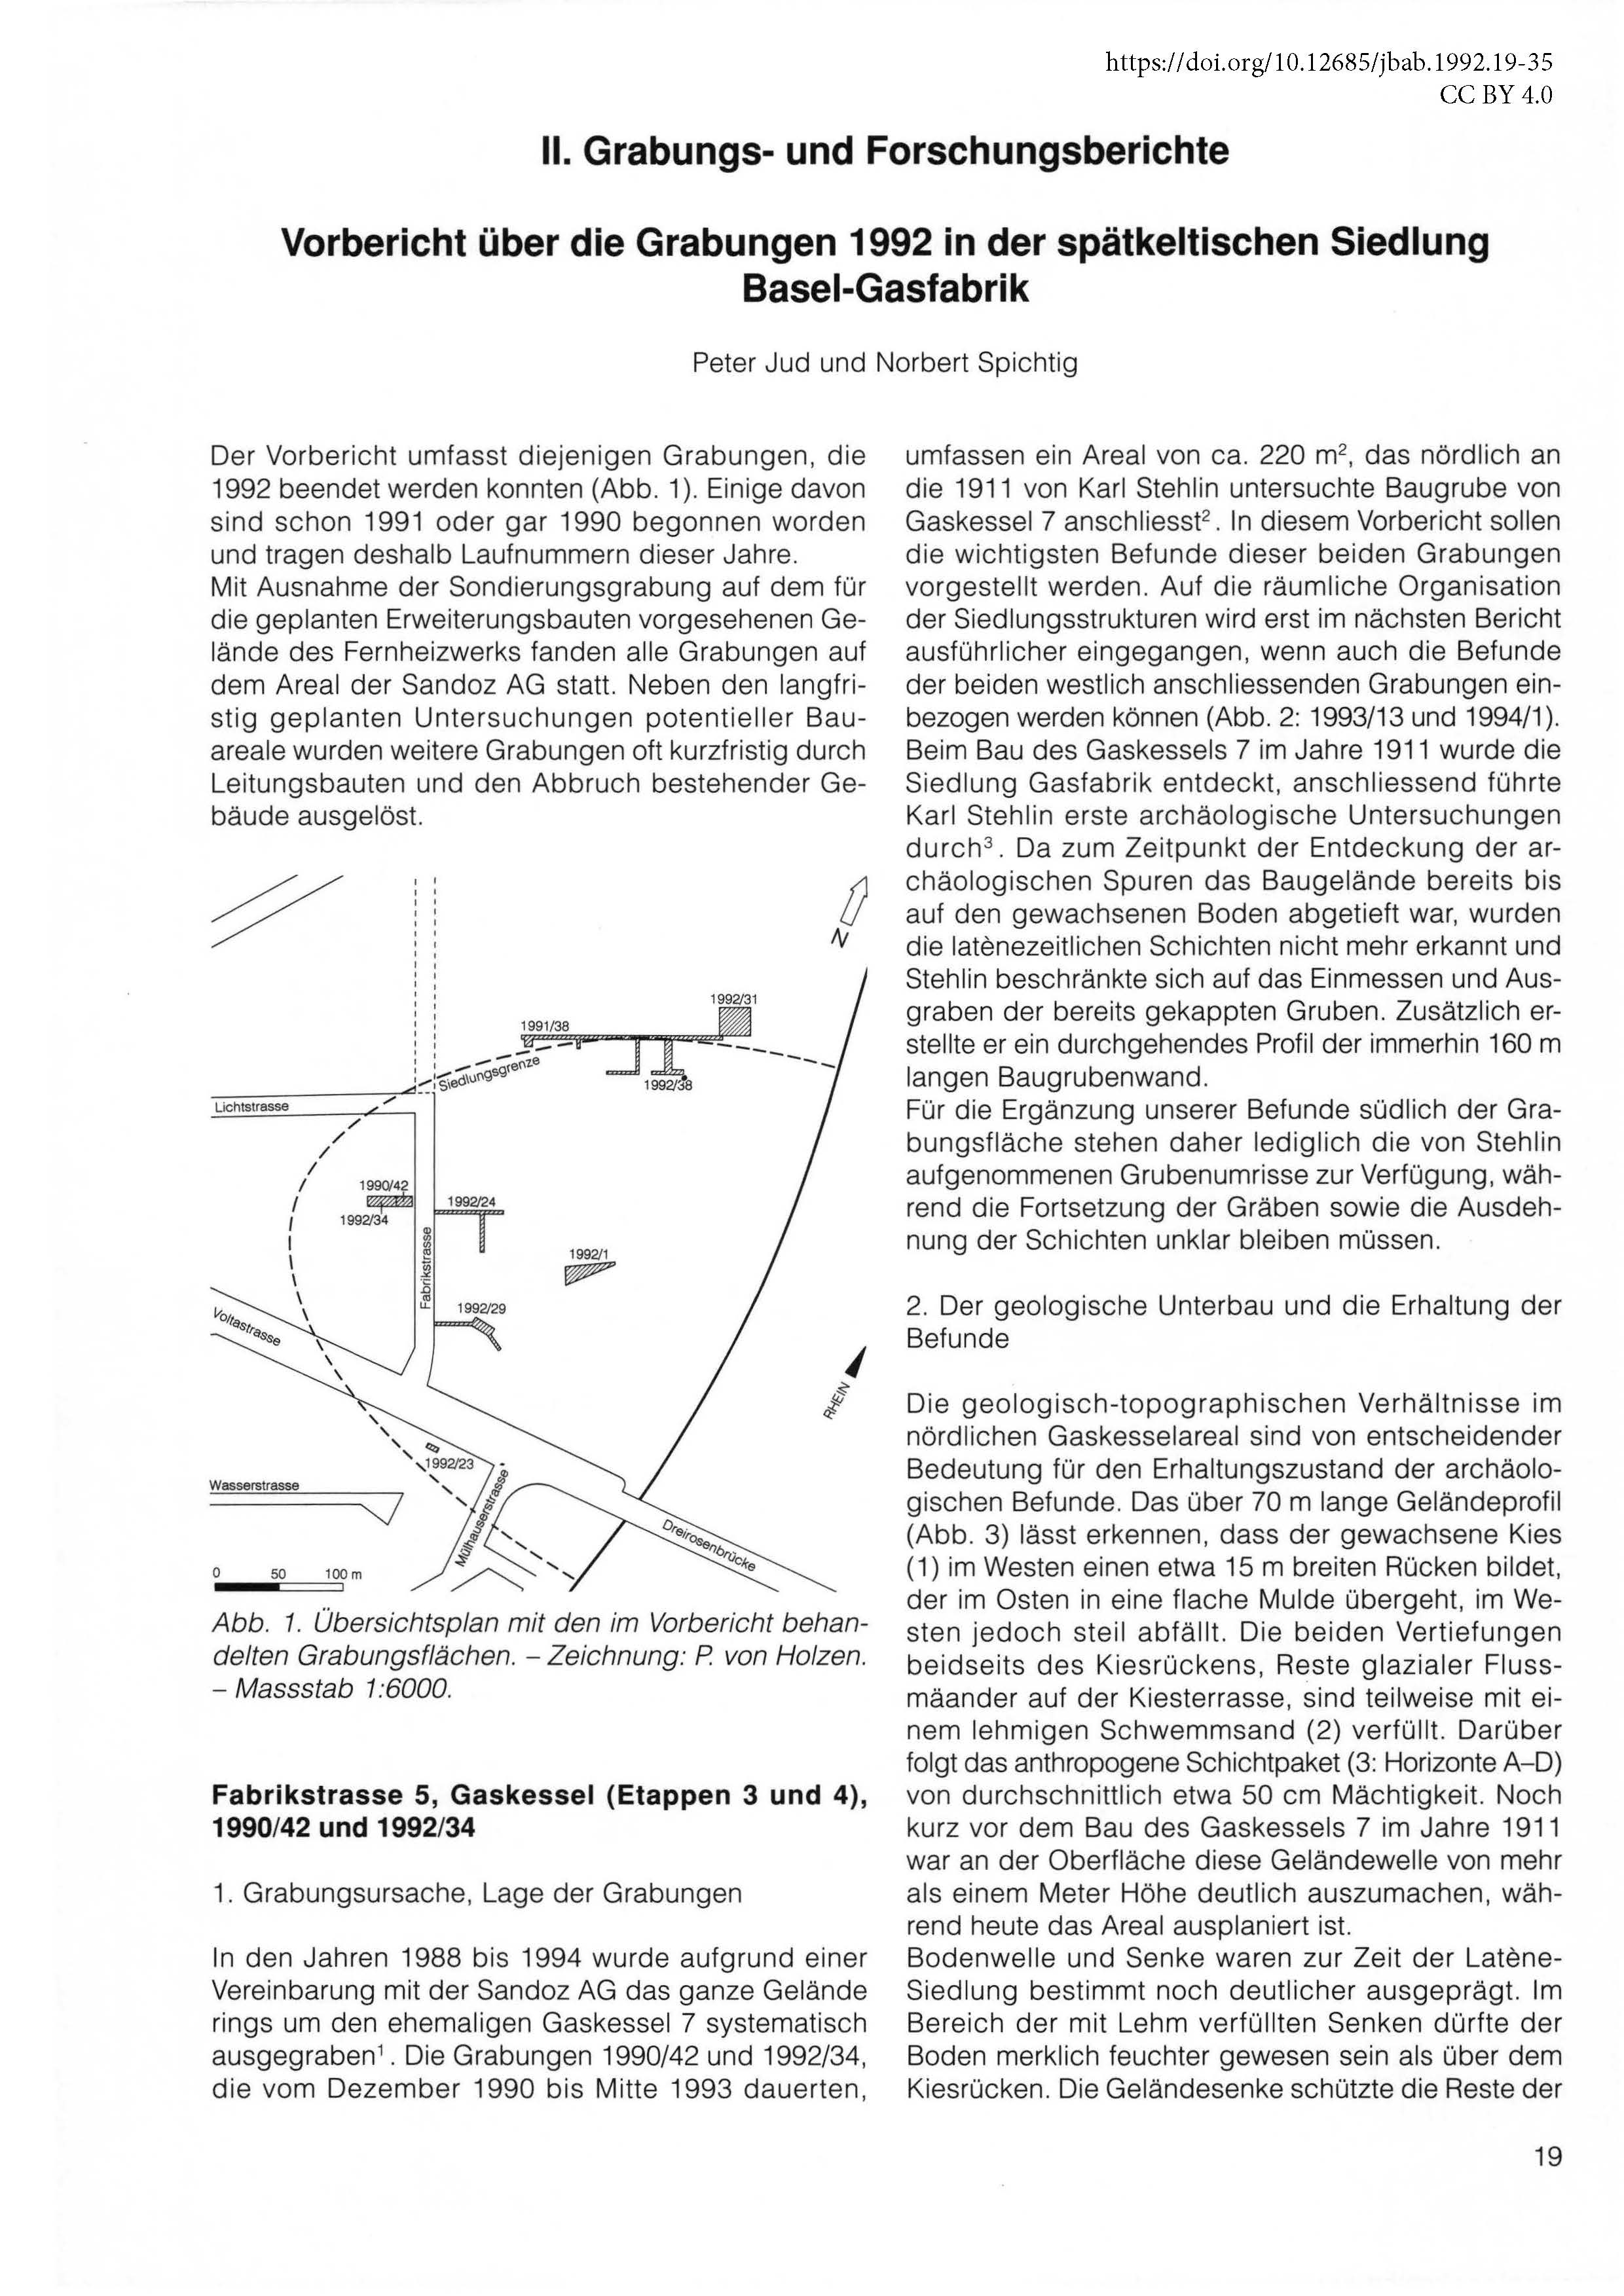 Erste Seite des Vorberichts über die Grabungen in der spätkeltischen Siedlung Basel-Gasfabrik